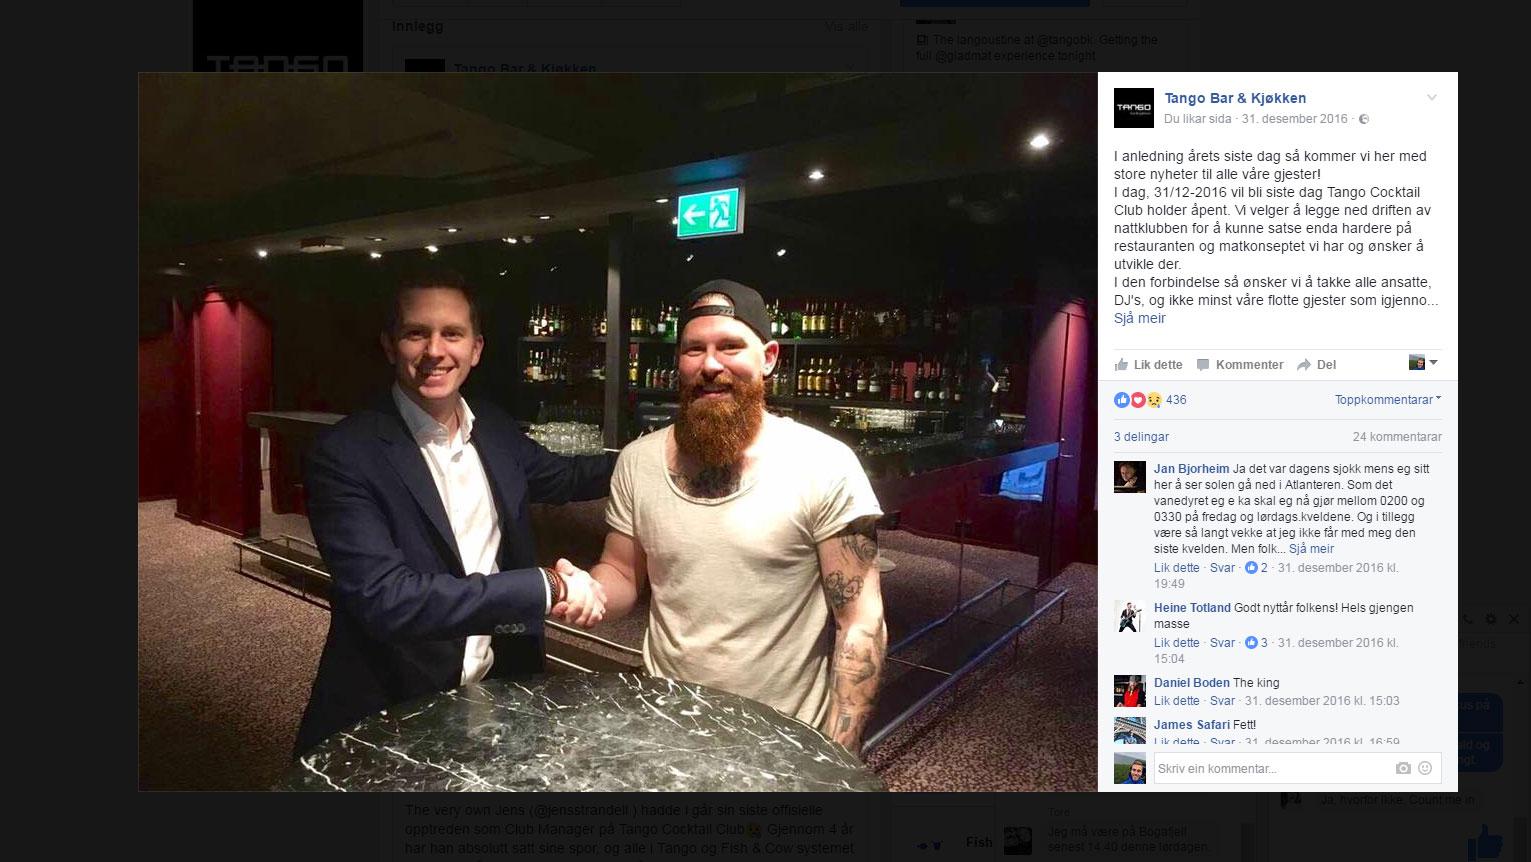 Nyttårsaften offentliggjorde Tango Bar & Kjøkken på sin Facebook-side at nattklubben legges ned. Samtidig ble det kjent at Jesper Rosvall fra Broremann Bar skal ta over lokalene.